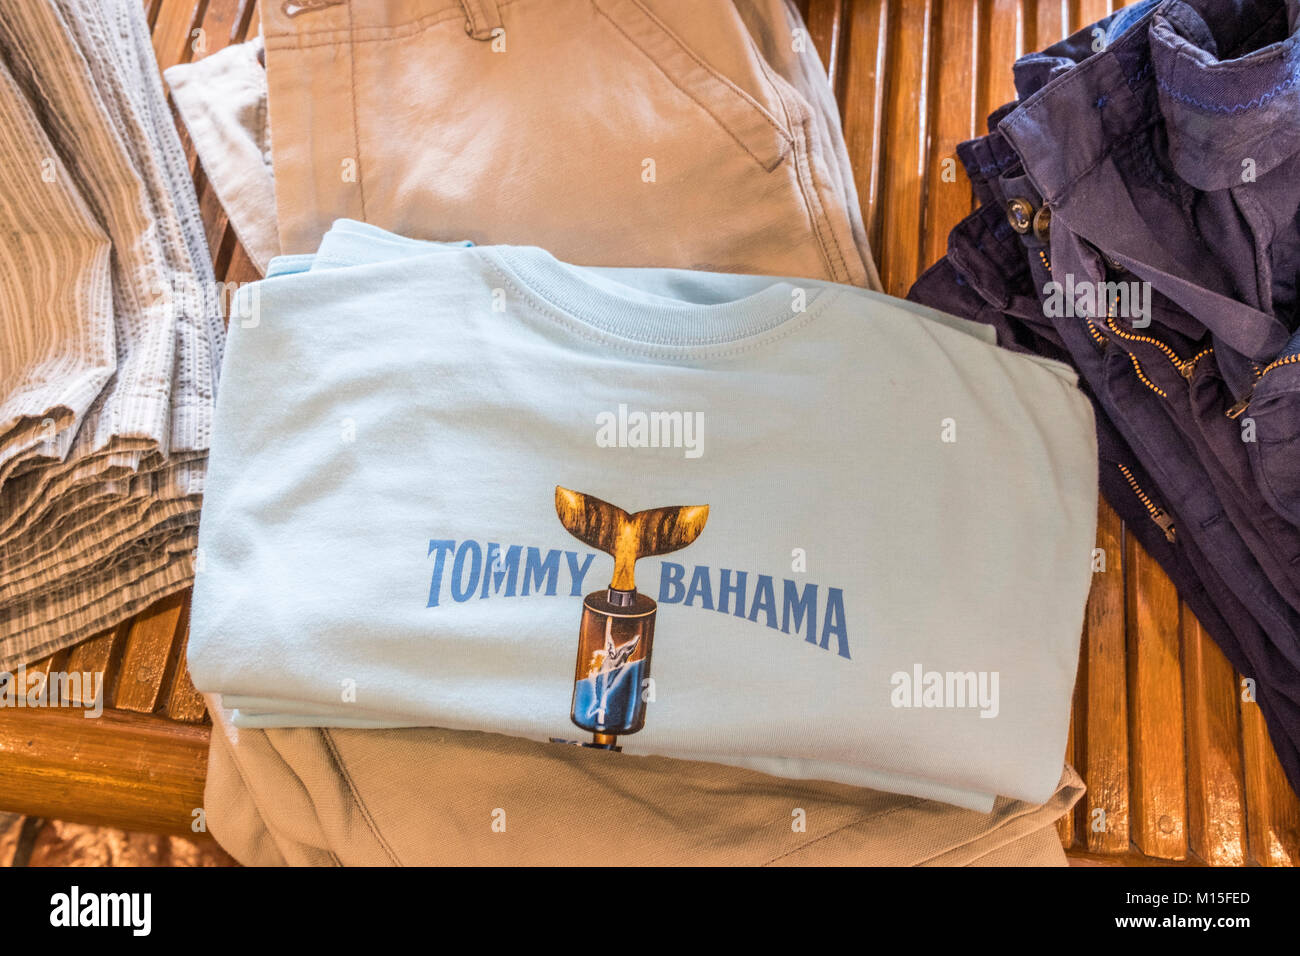 tommy bahama clothing store